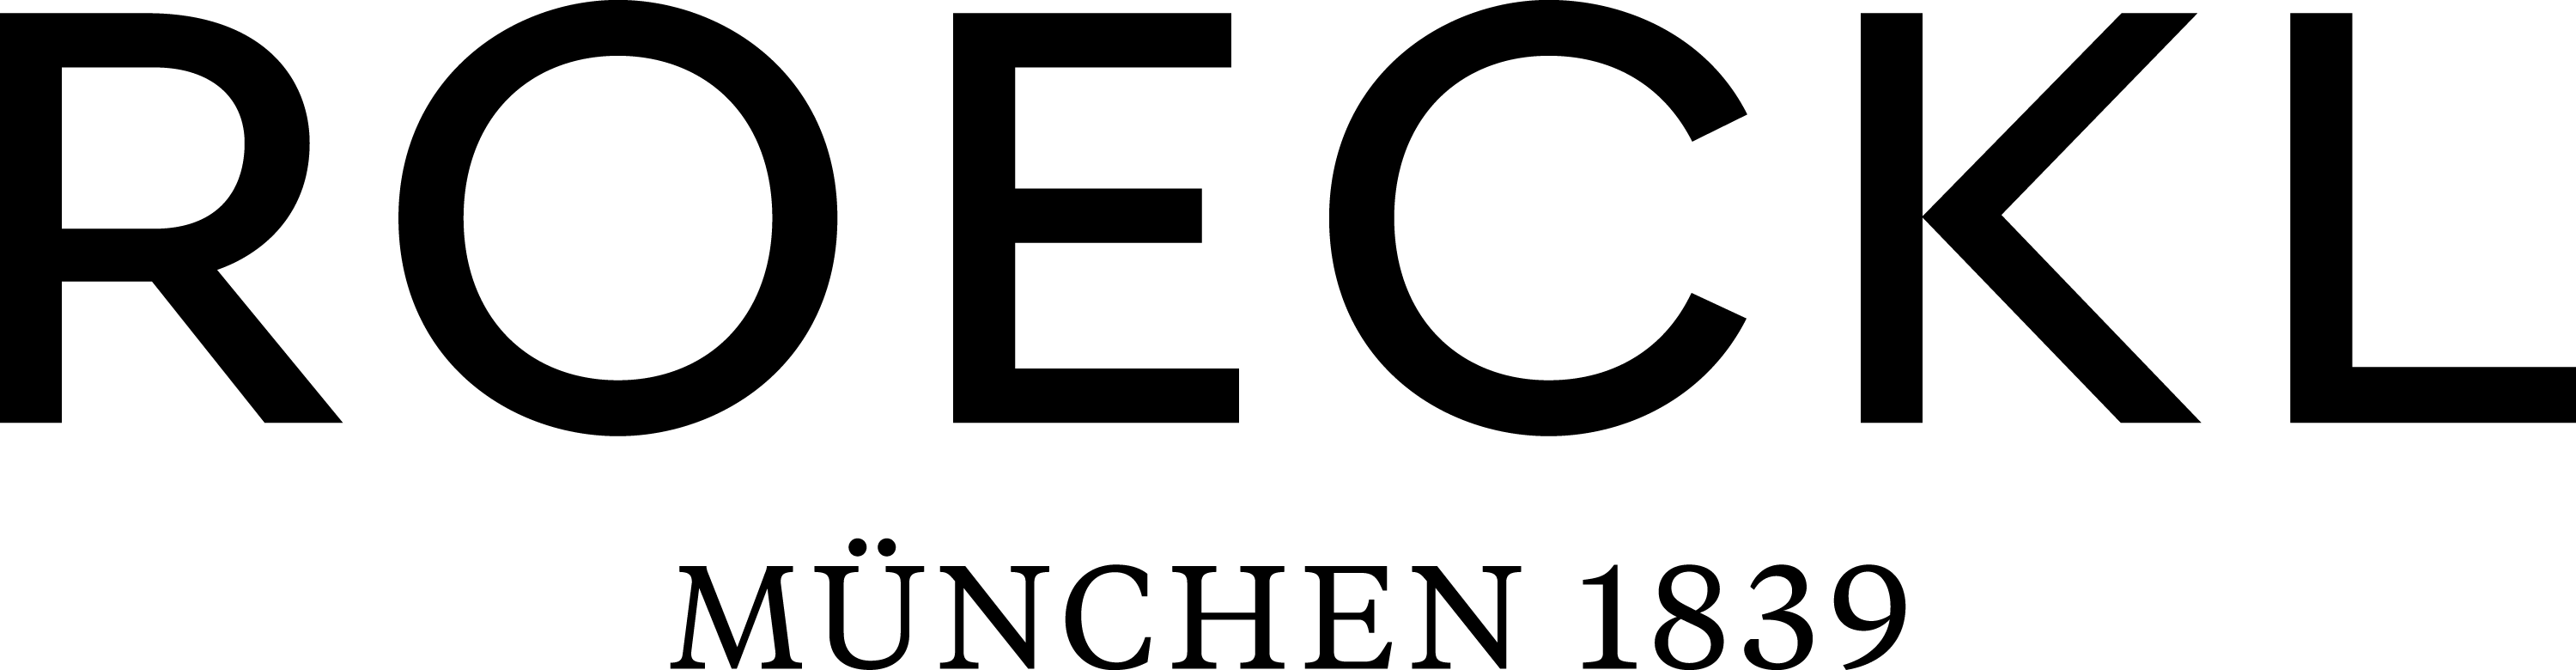 Roeckl Logo